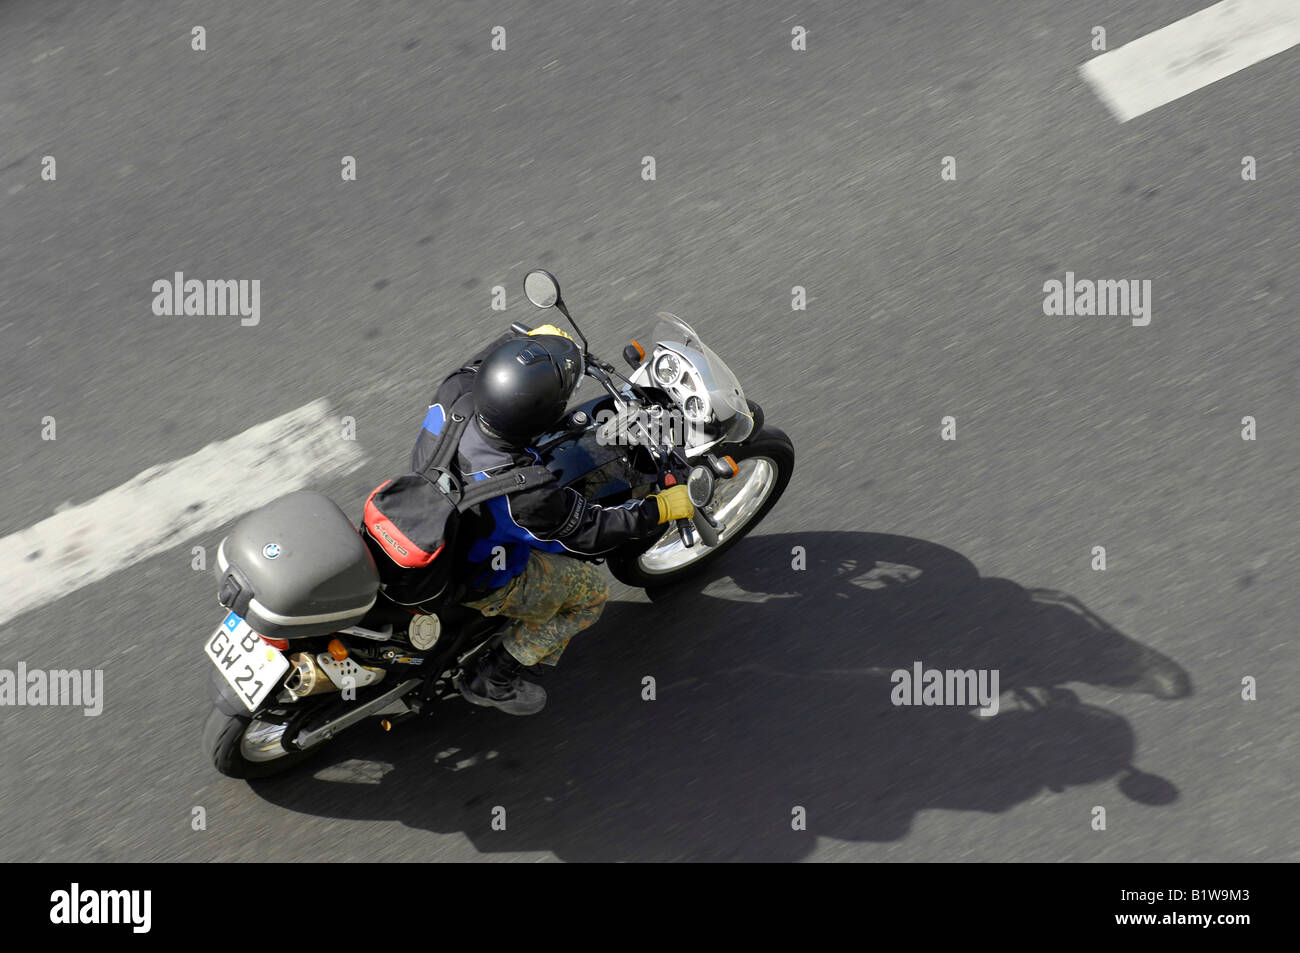 aerial view motorbike motorcycle berlin germany deutschland Stock Photo